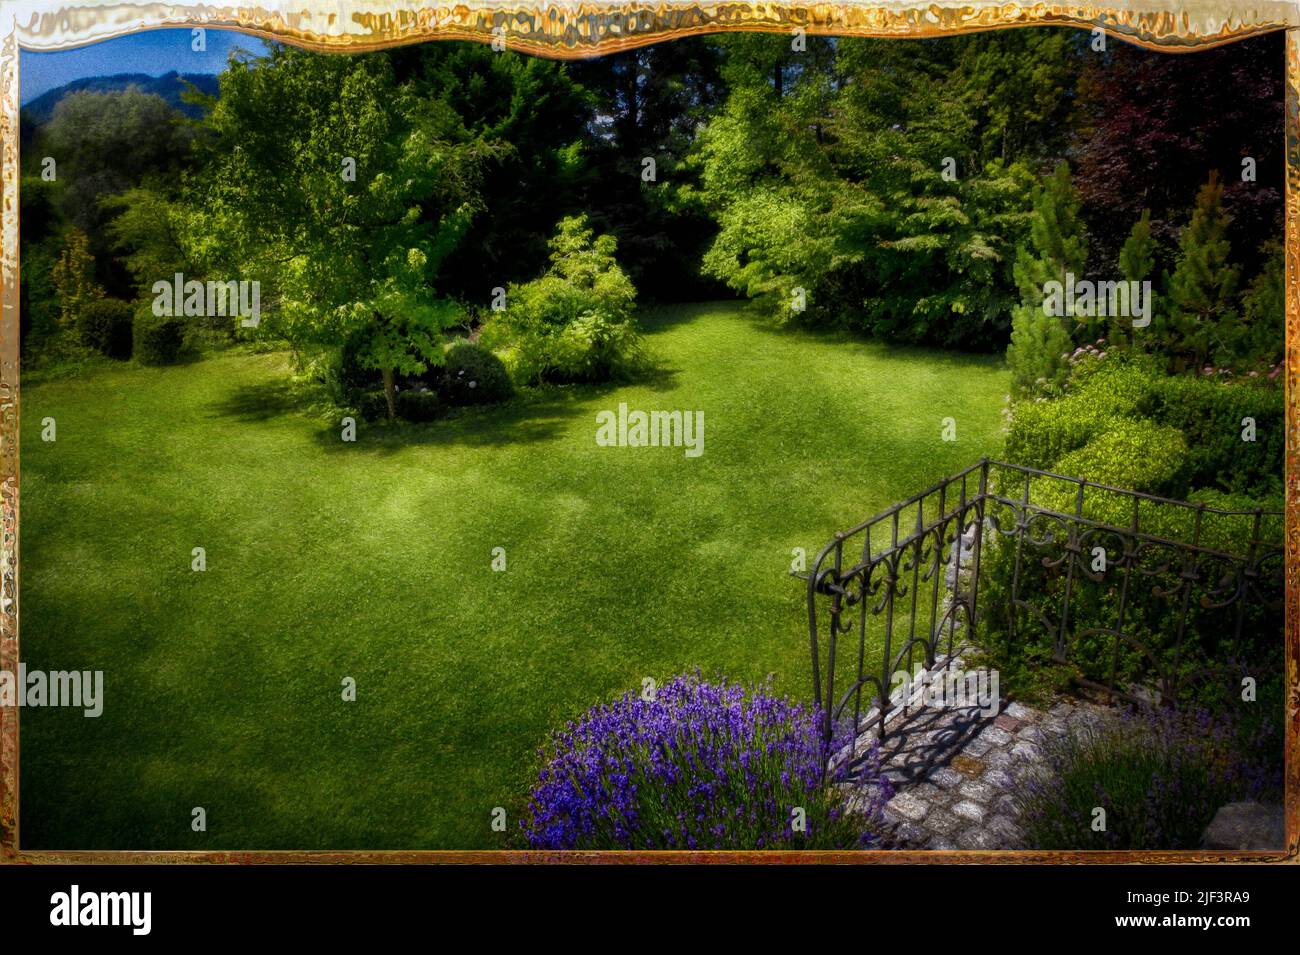 ARTE CONTEMPORANEA INCORNICIATA: Scena giardino a Bad Tölz, Oberbayern, Germania Foto Stock